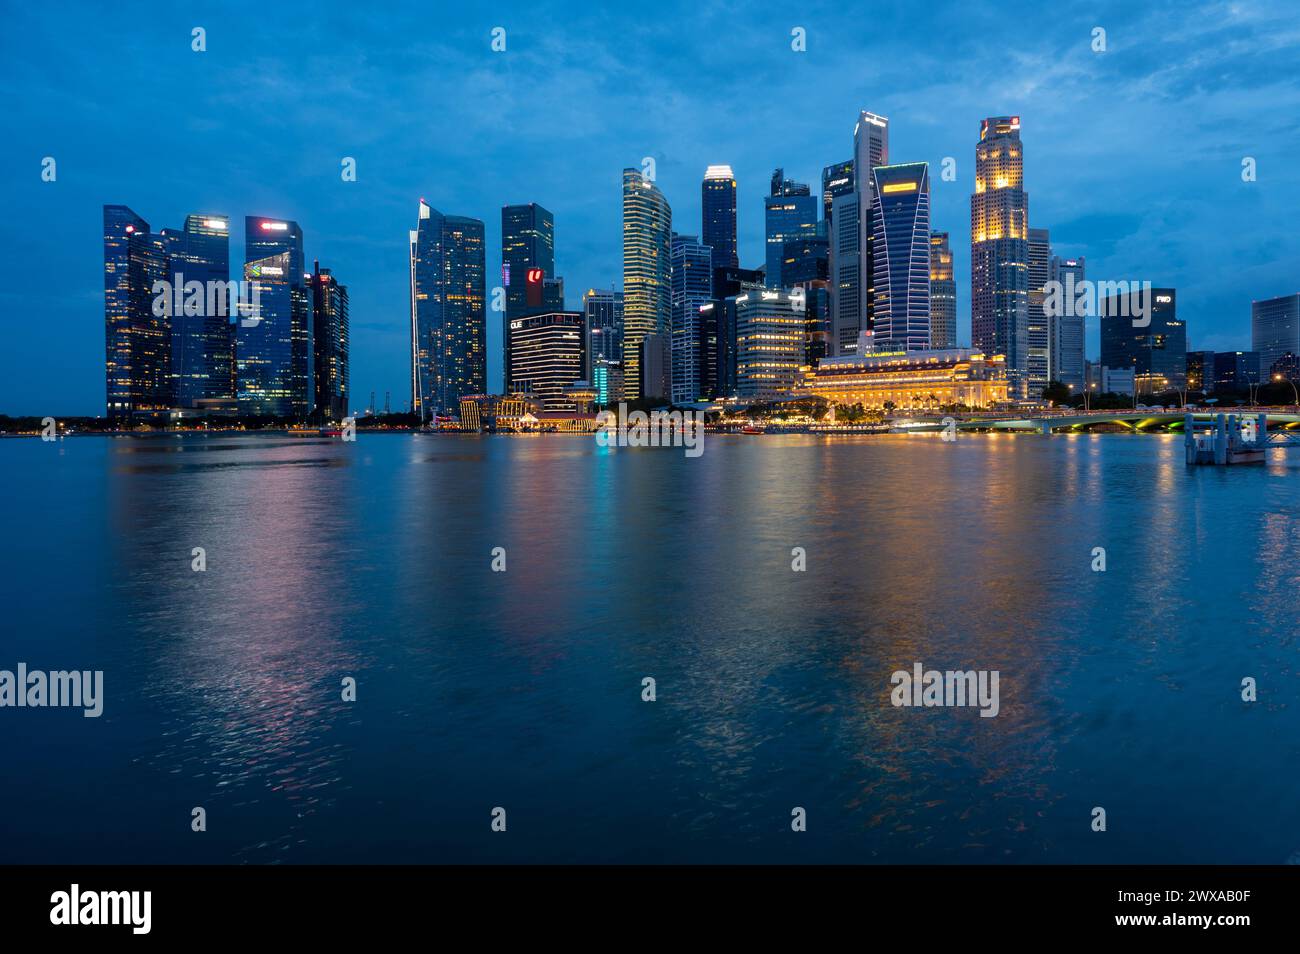 Singapore Marina Bay Area Stock Photo